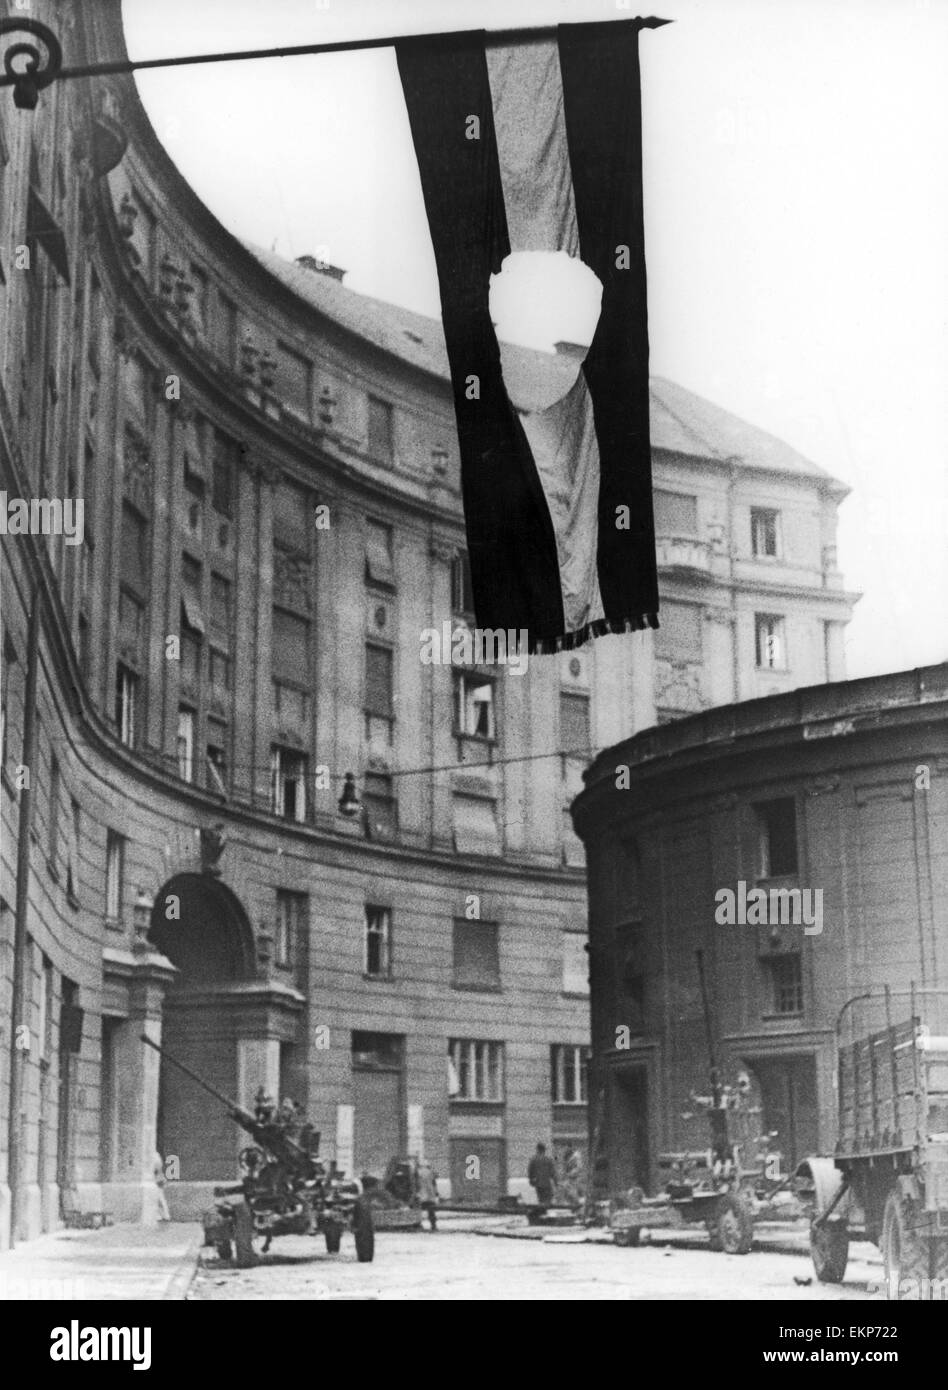 La bandiera ungherese visto qui in volo da un edificio governativo a Budapest con la stella rossa tagliata fuori di esso. Entro la fine di ottobre 1956 gli scontri tra i pro comunisti sovietici e organizzata in tutta fretta militas aveva quasi smesso. La nuova forma di governo Foto Stock